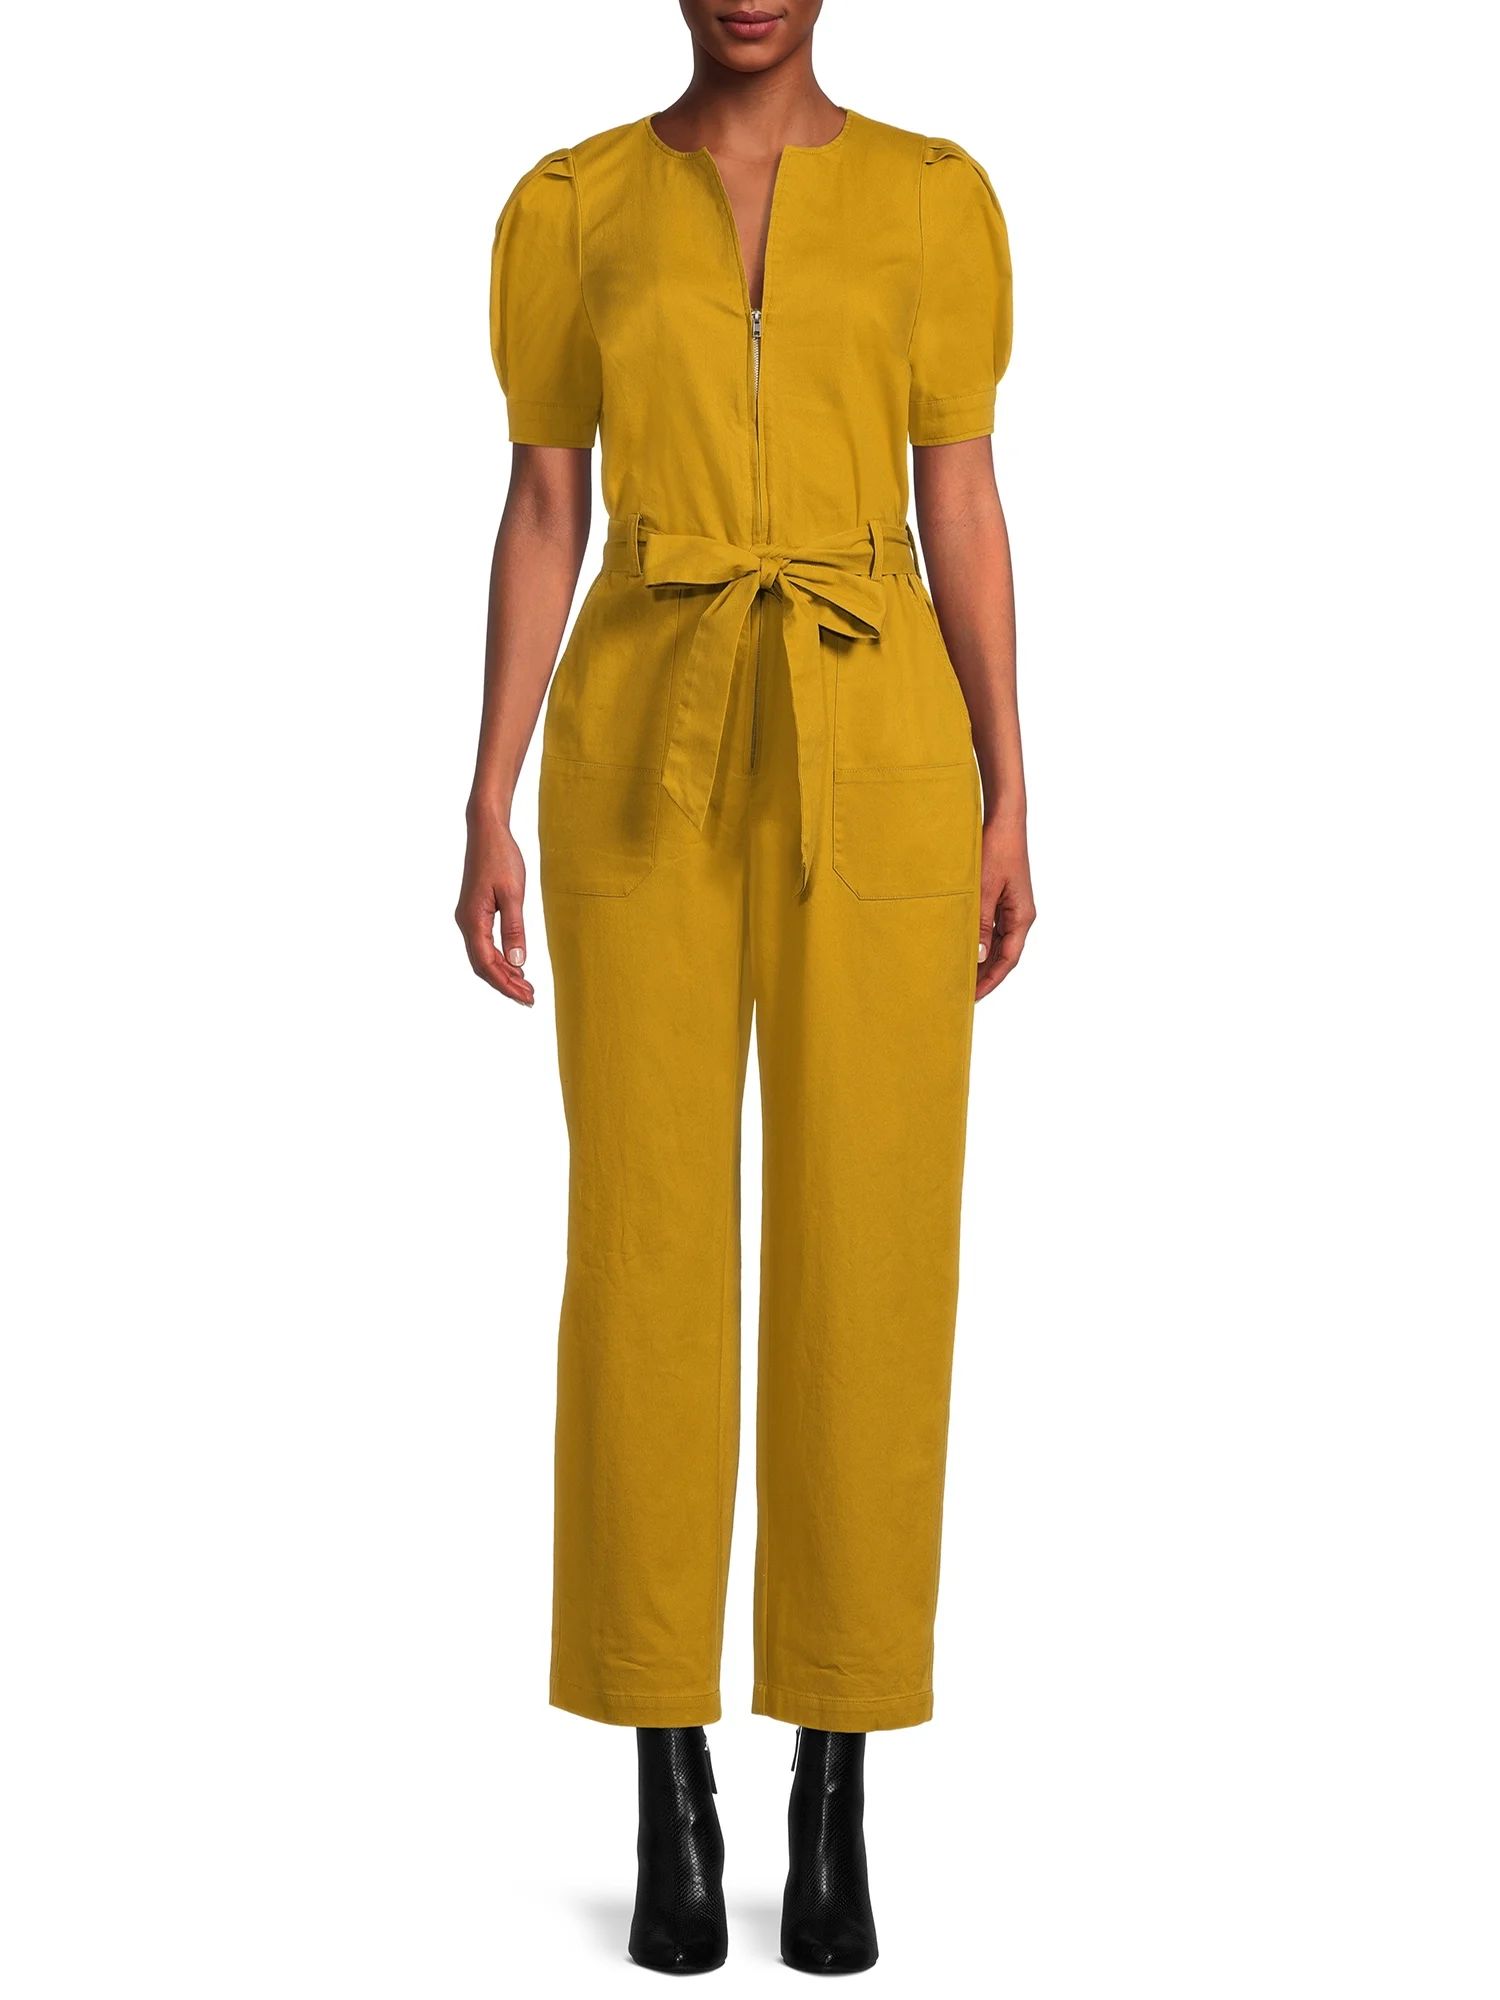 The Get Women's Short Sleeve Zip Front Jumpsuit with Tie | Walmart (US)